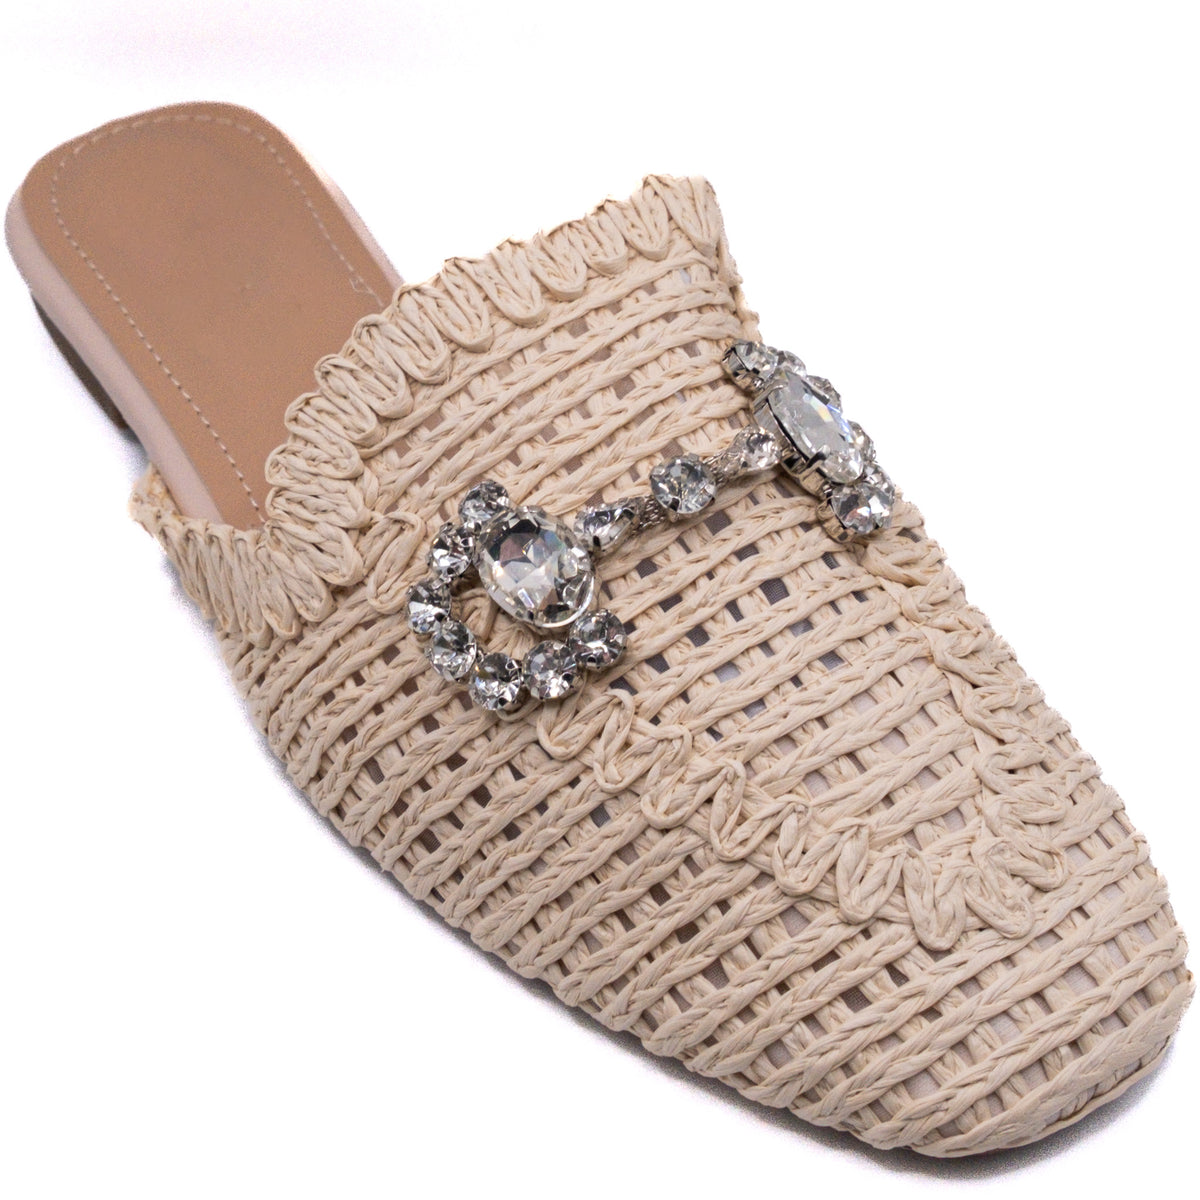 Bling Crochet Sandals